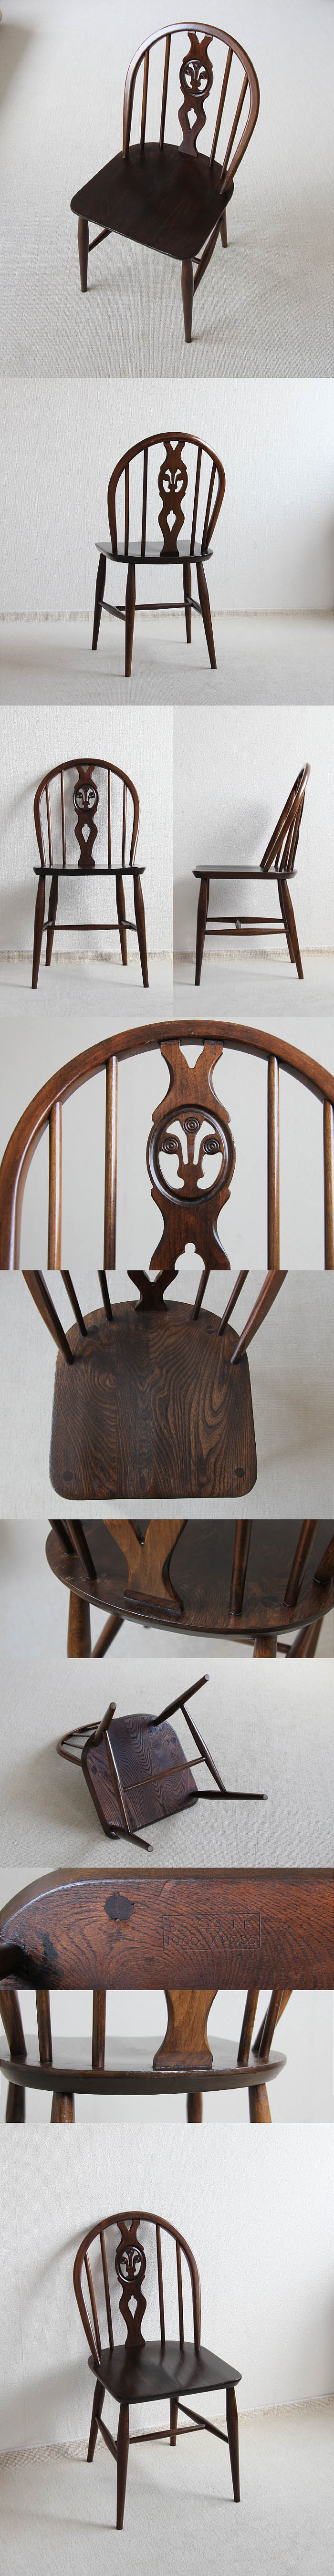 イギリス ヴィンテージ アーコールチェア ERCOL 木製椅子 アンティーク 家具「シスルバック」V-936